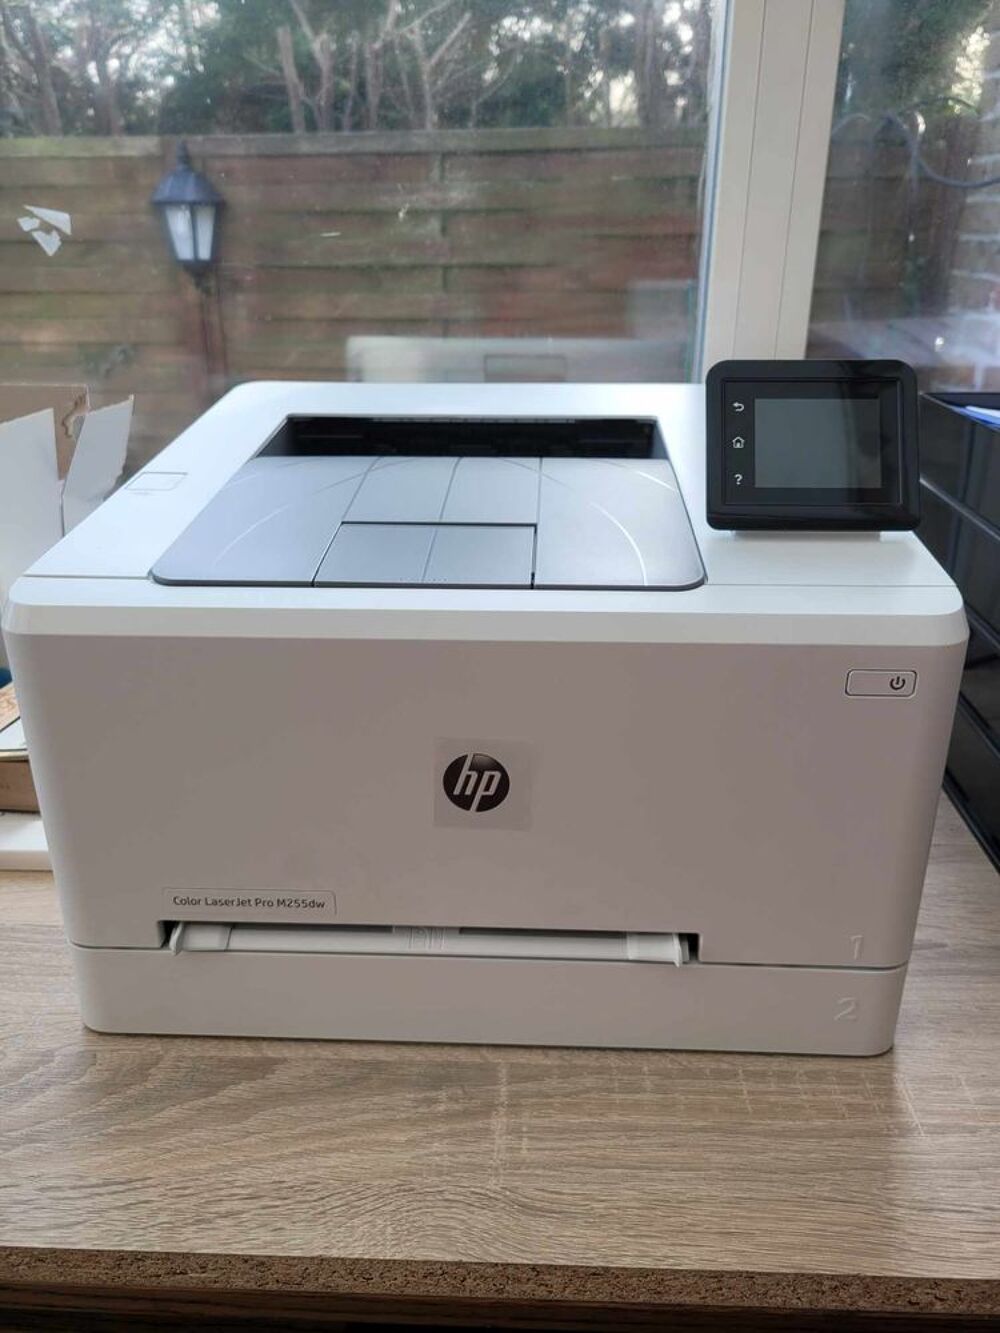  imprimante HP Color Laser Jet Pro M255dw Matriel informatique